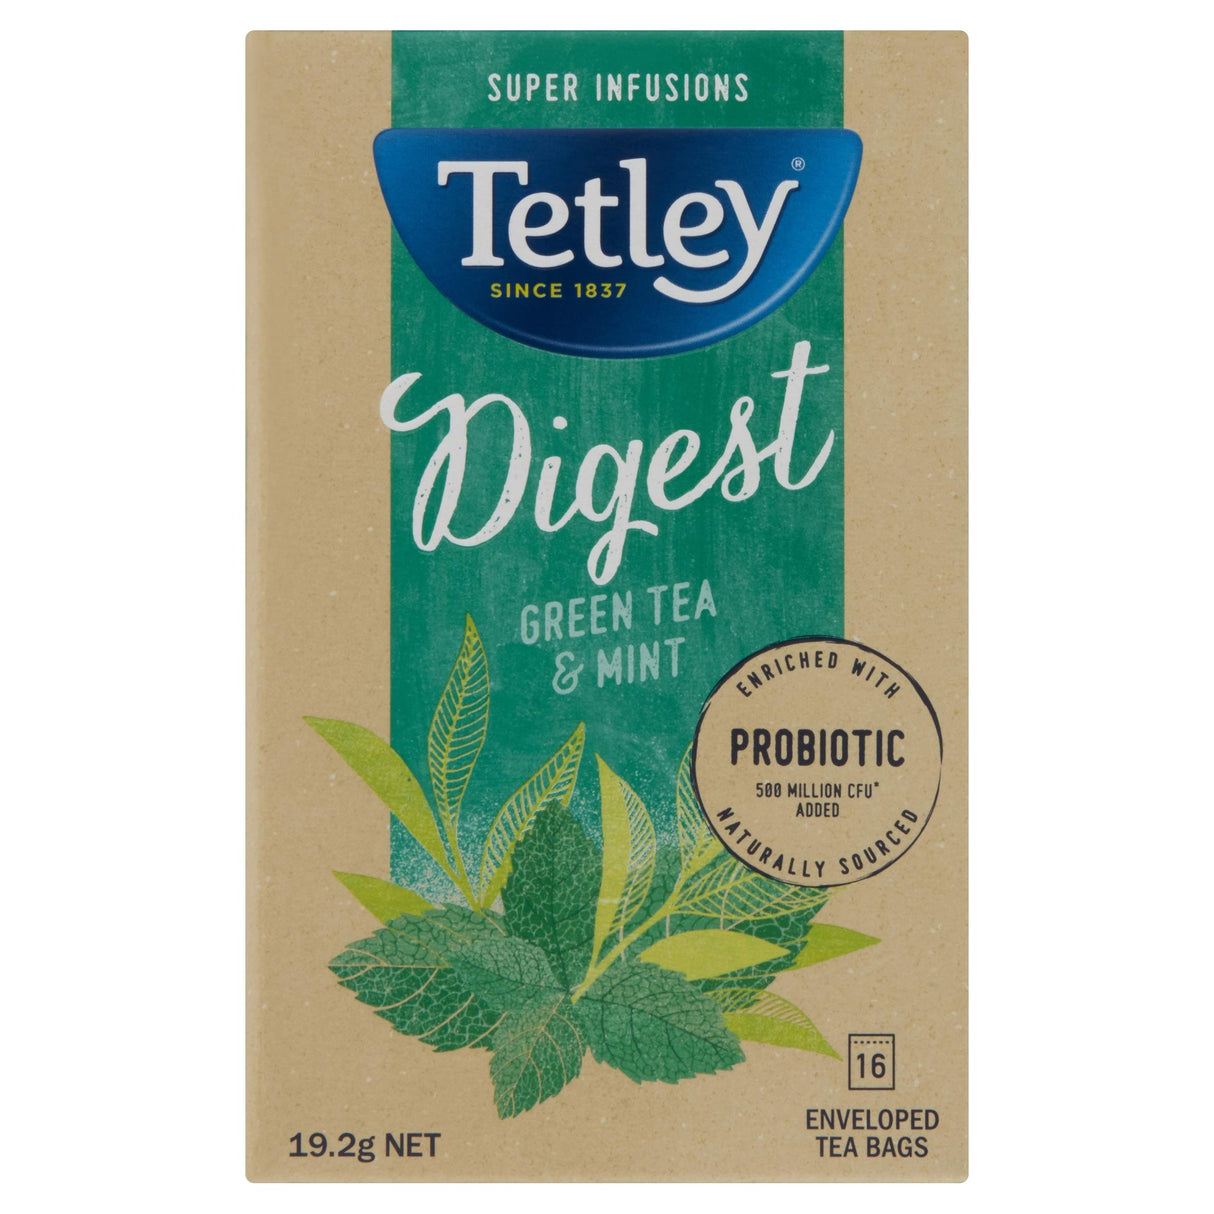 Tetley Super Infusions Digest Mint & Green Tea 16 Pack